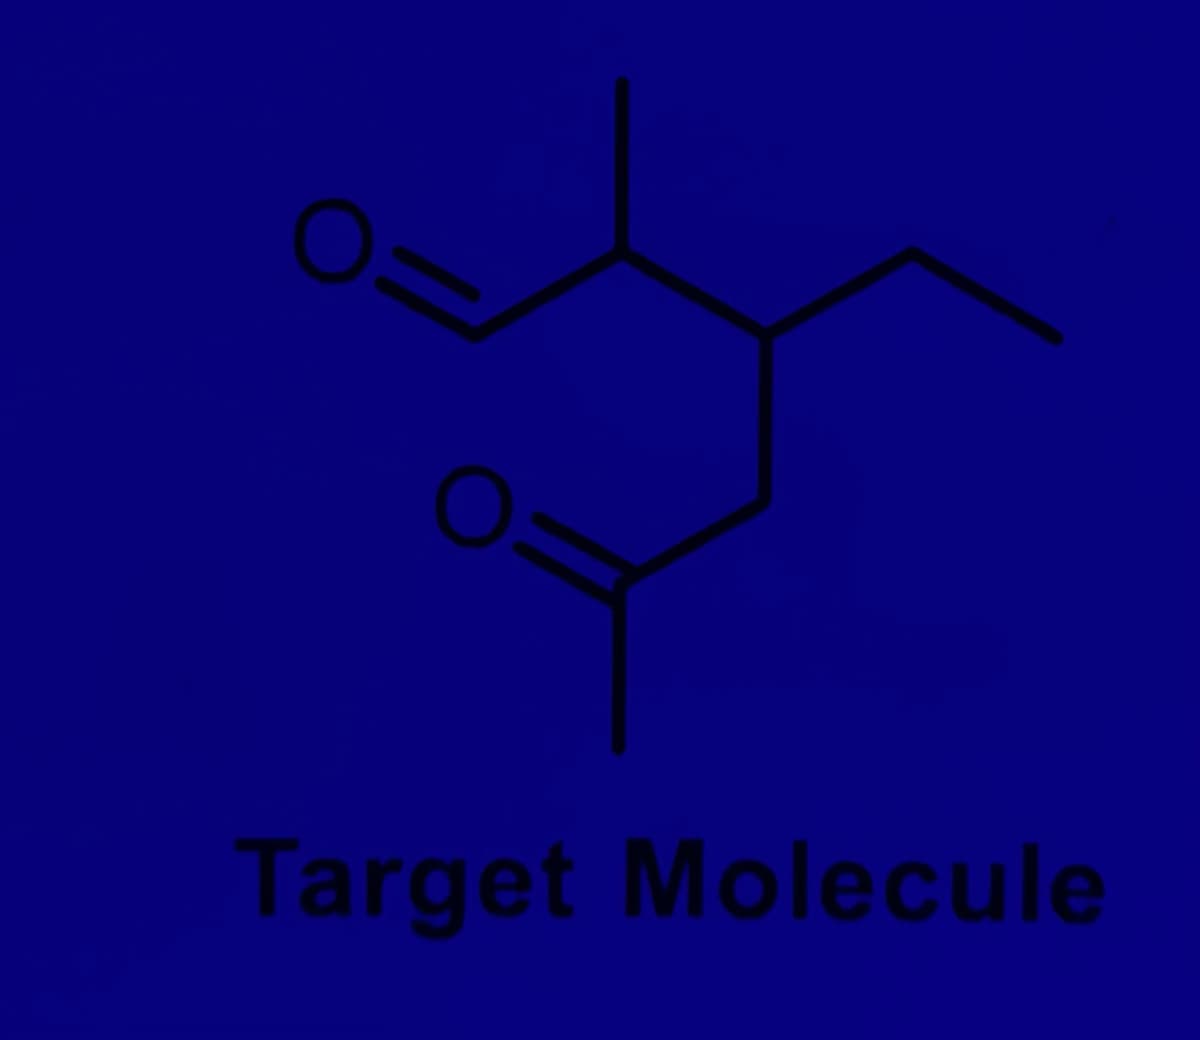 Target Molecule
